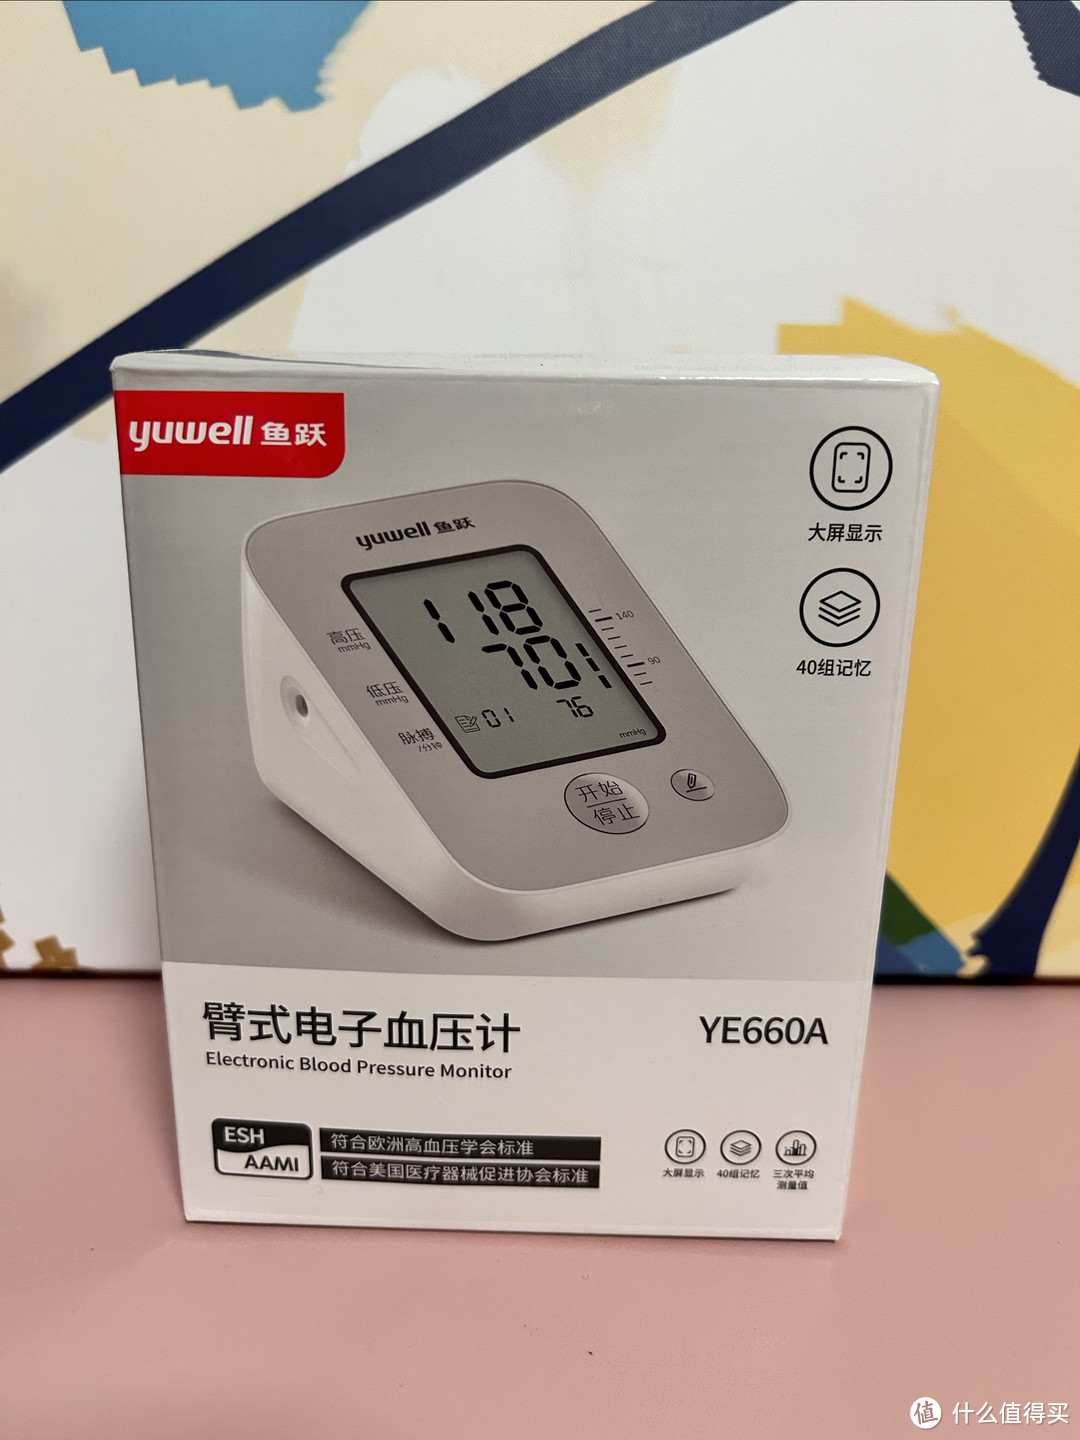 血压计不再是老年人的必备，中青年患者近年来已成上升趋势，家里备一台血压计您觉得有必要吗？